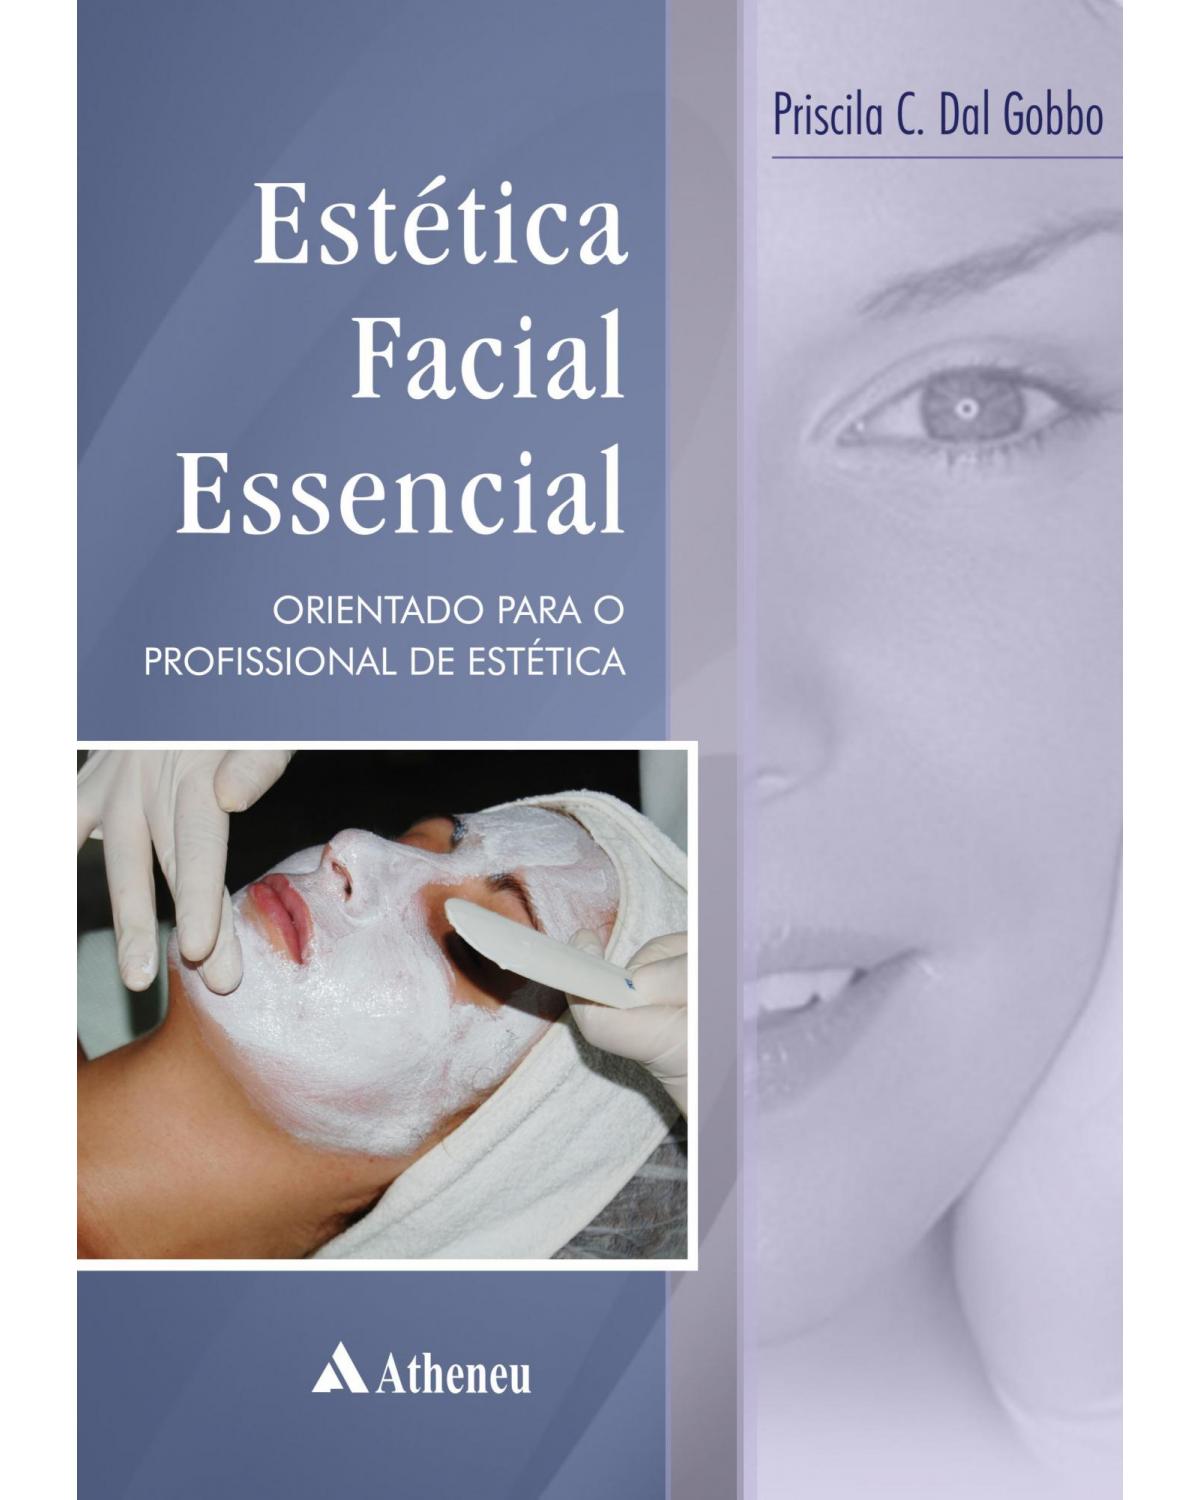 Estética facial essencial - orientações para o profissional de estética - 1ª Edição | 2010